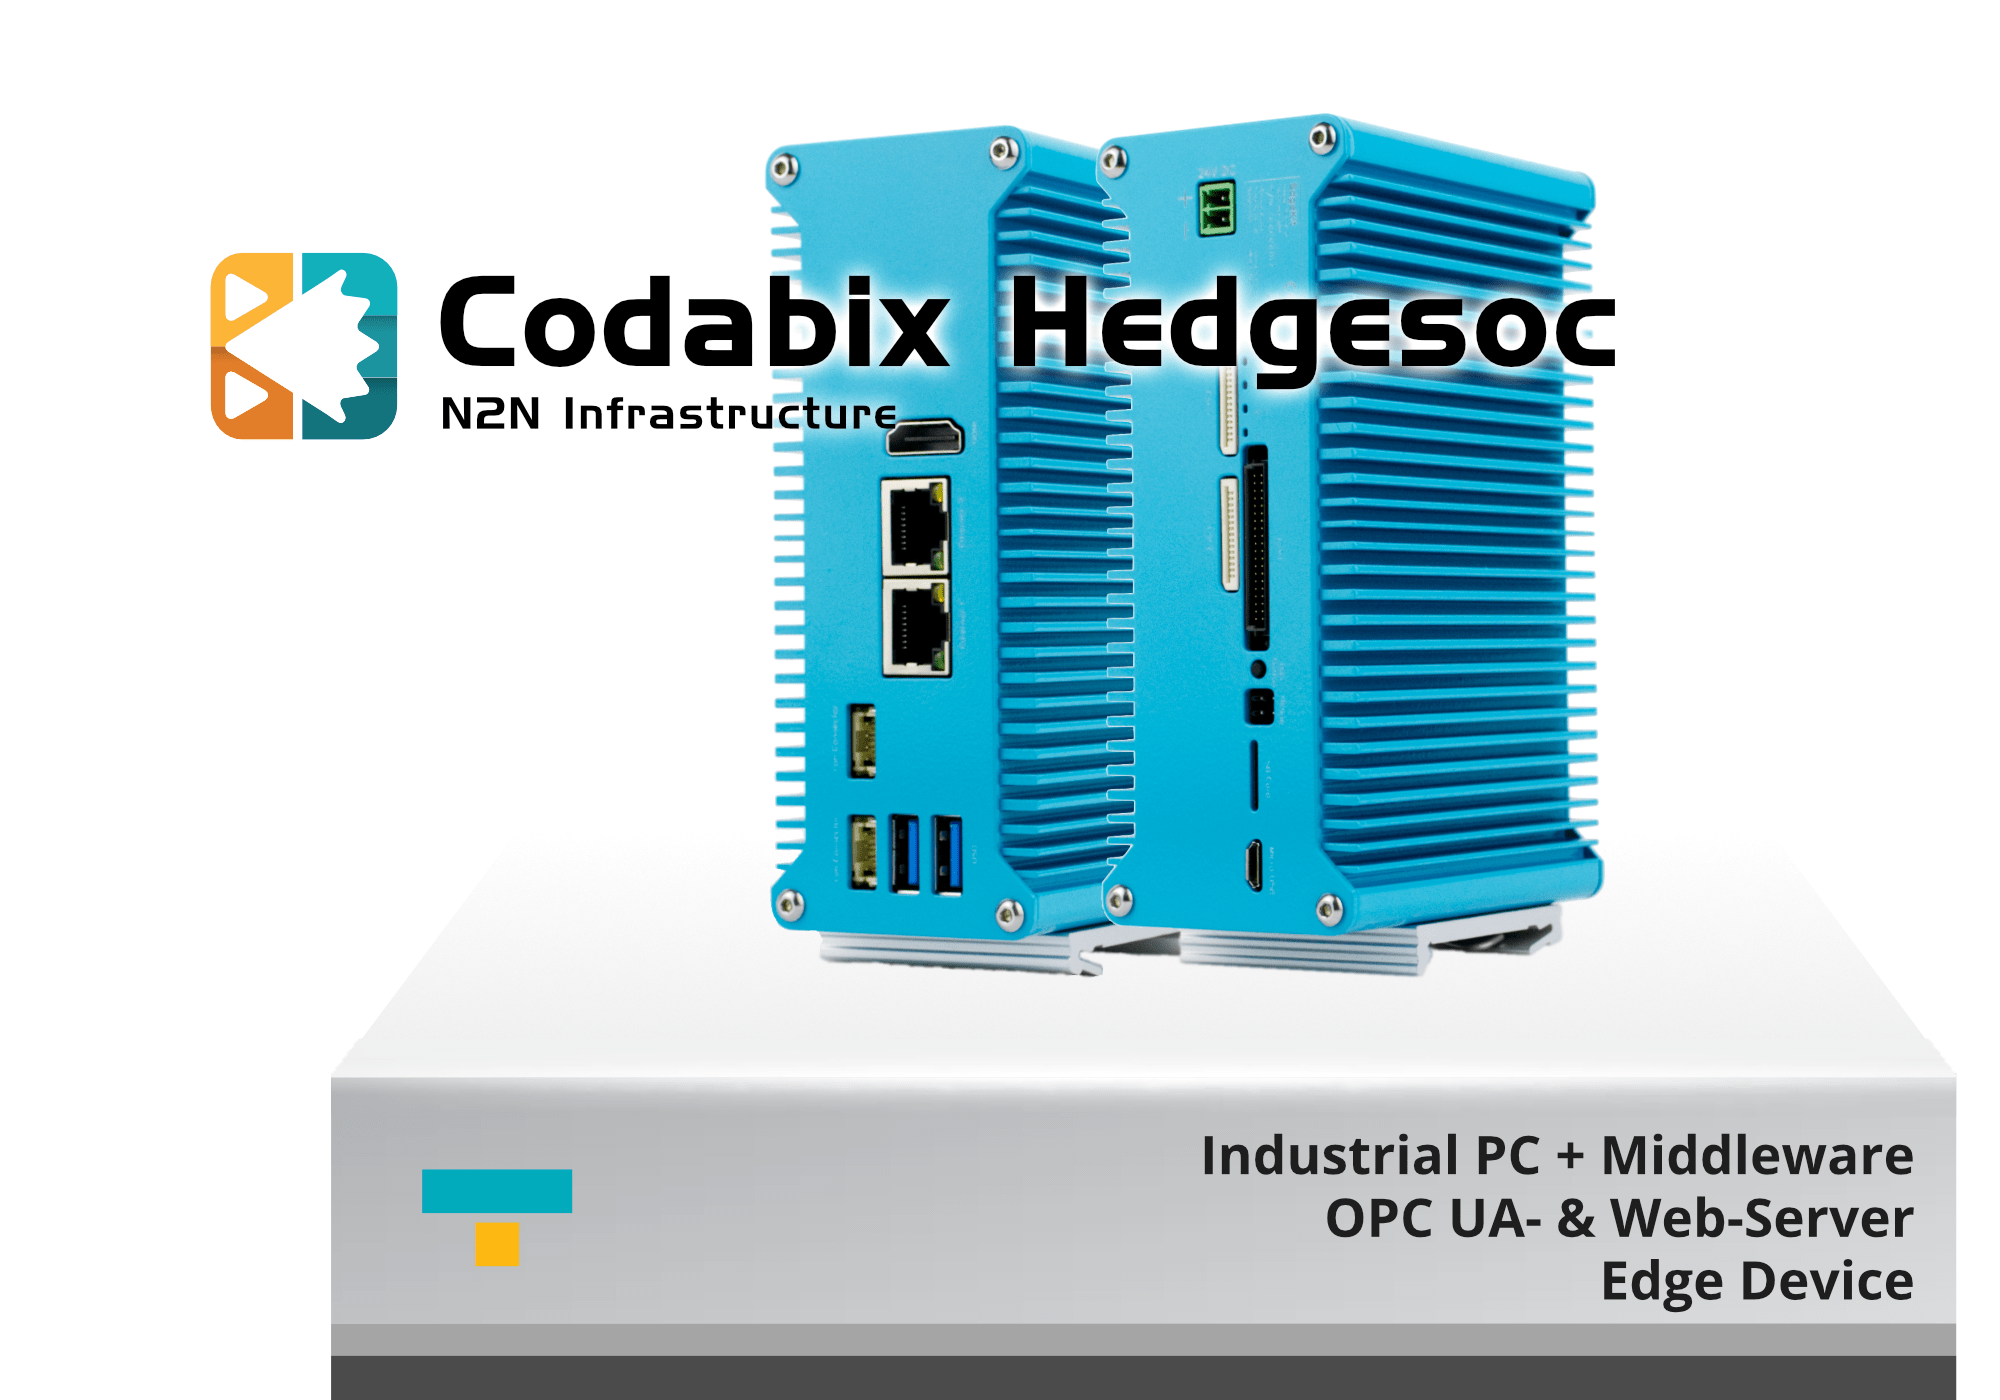 Codabix Hedgesoc product image